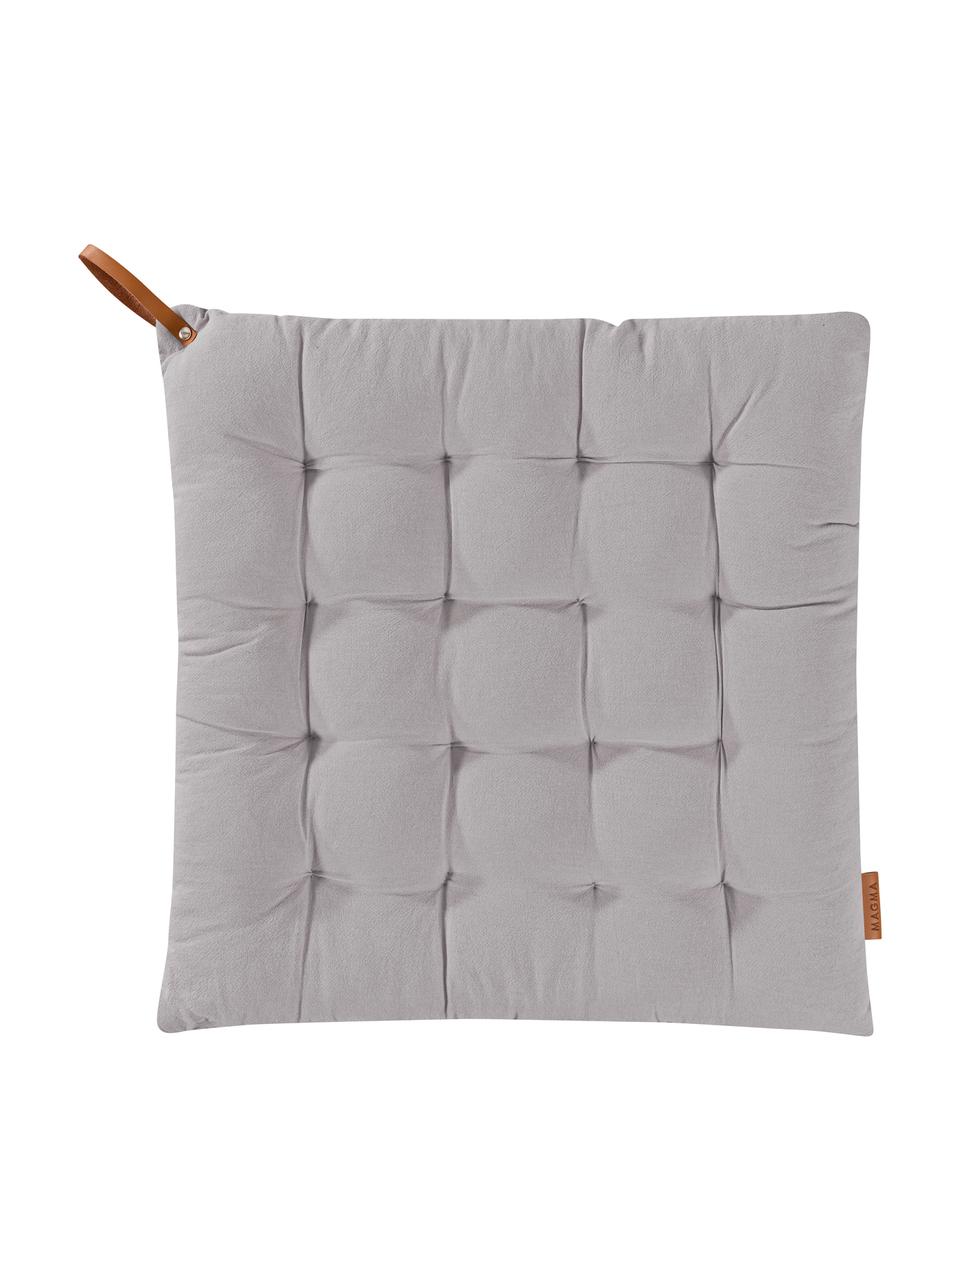 Poduszka na siedzisko Billie, 100% bawełna, Szary, S 40 x D 40 cm